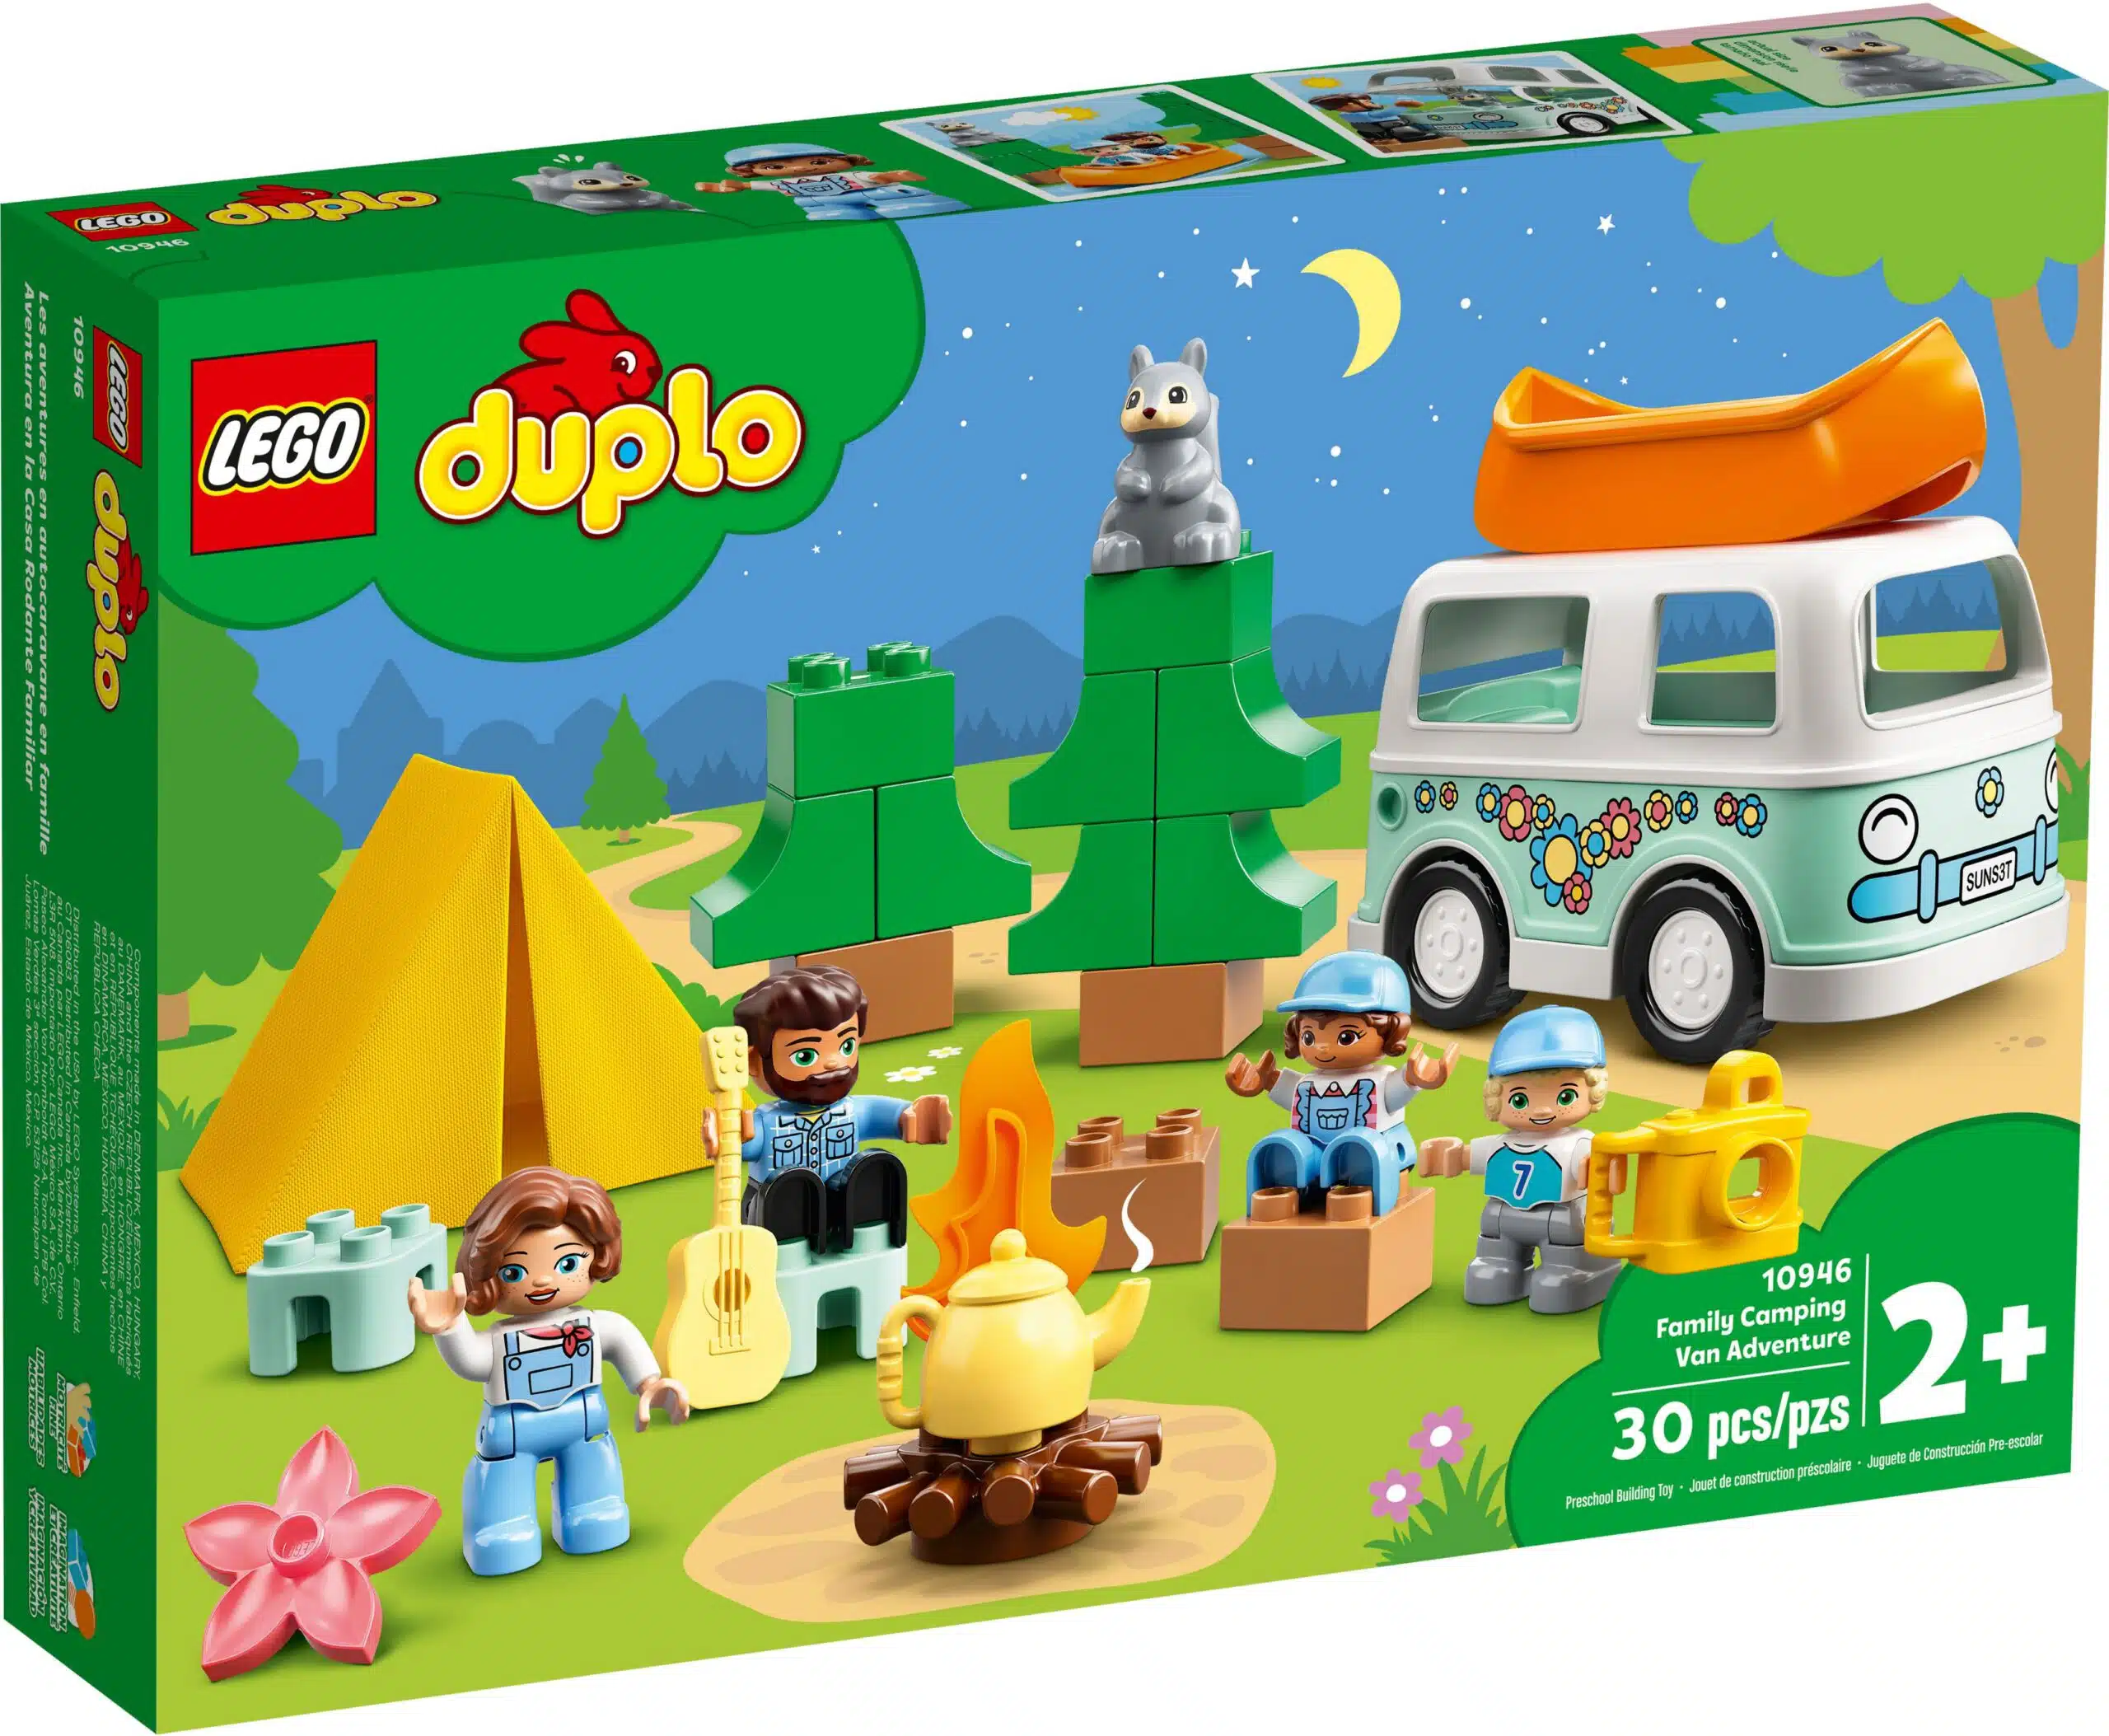 LEGO® Duplo 10946 Familienabenteuer mit Campingbus